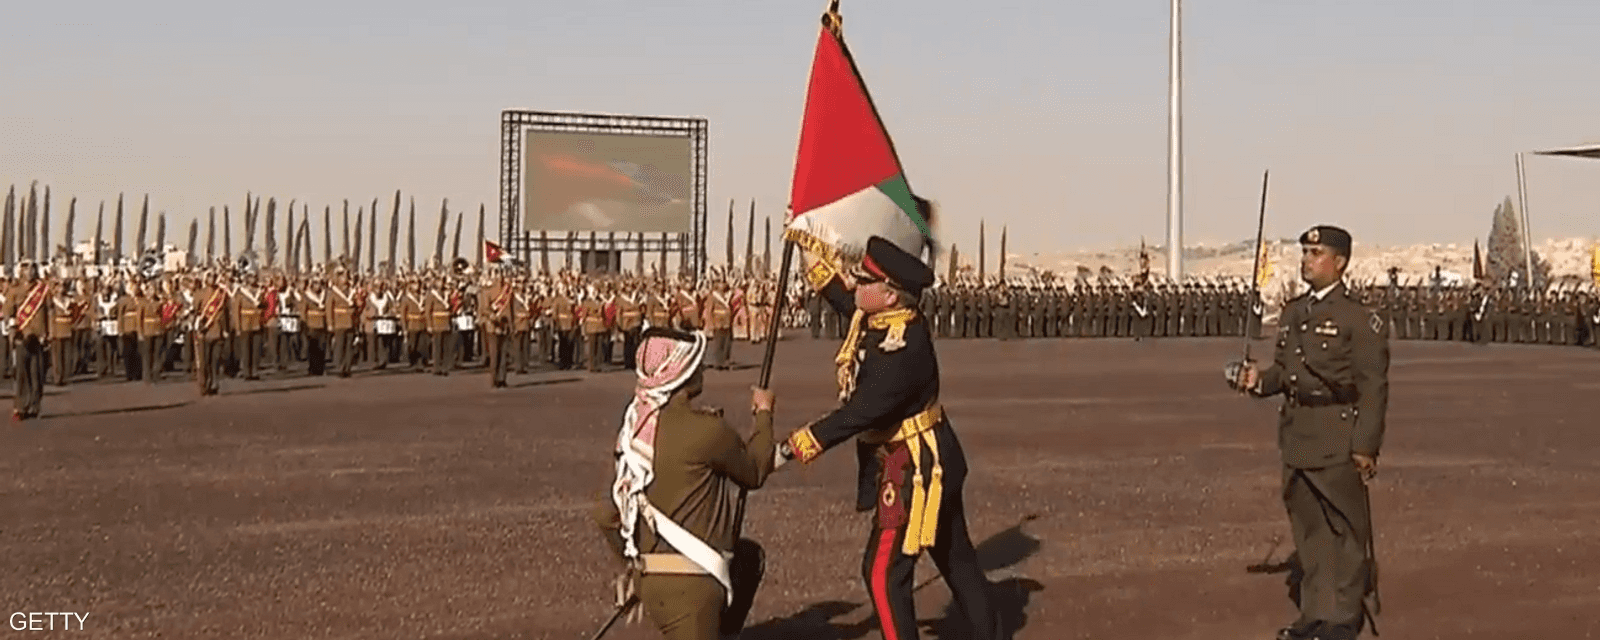 العاهل الأردني، عبد الله الثاني، يسلم العلم في باحة الاستعراض